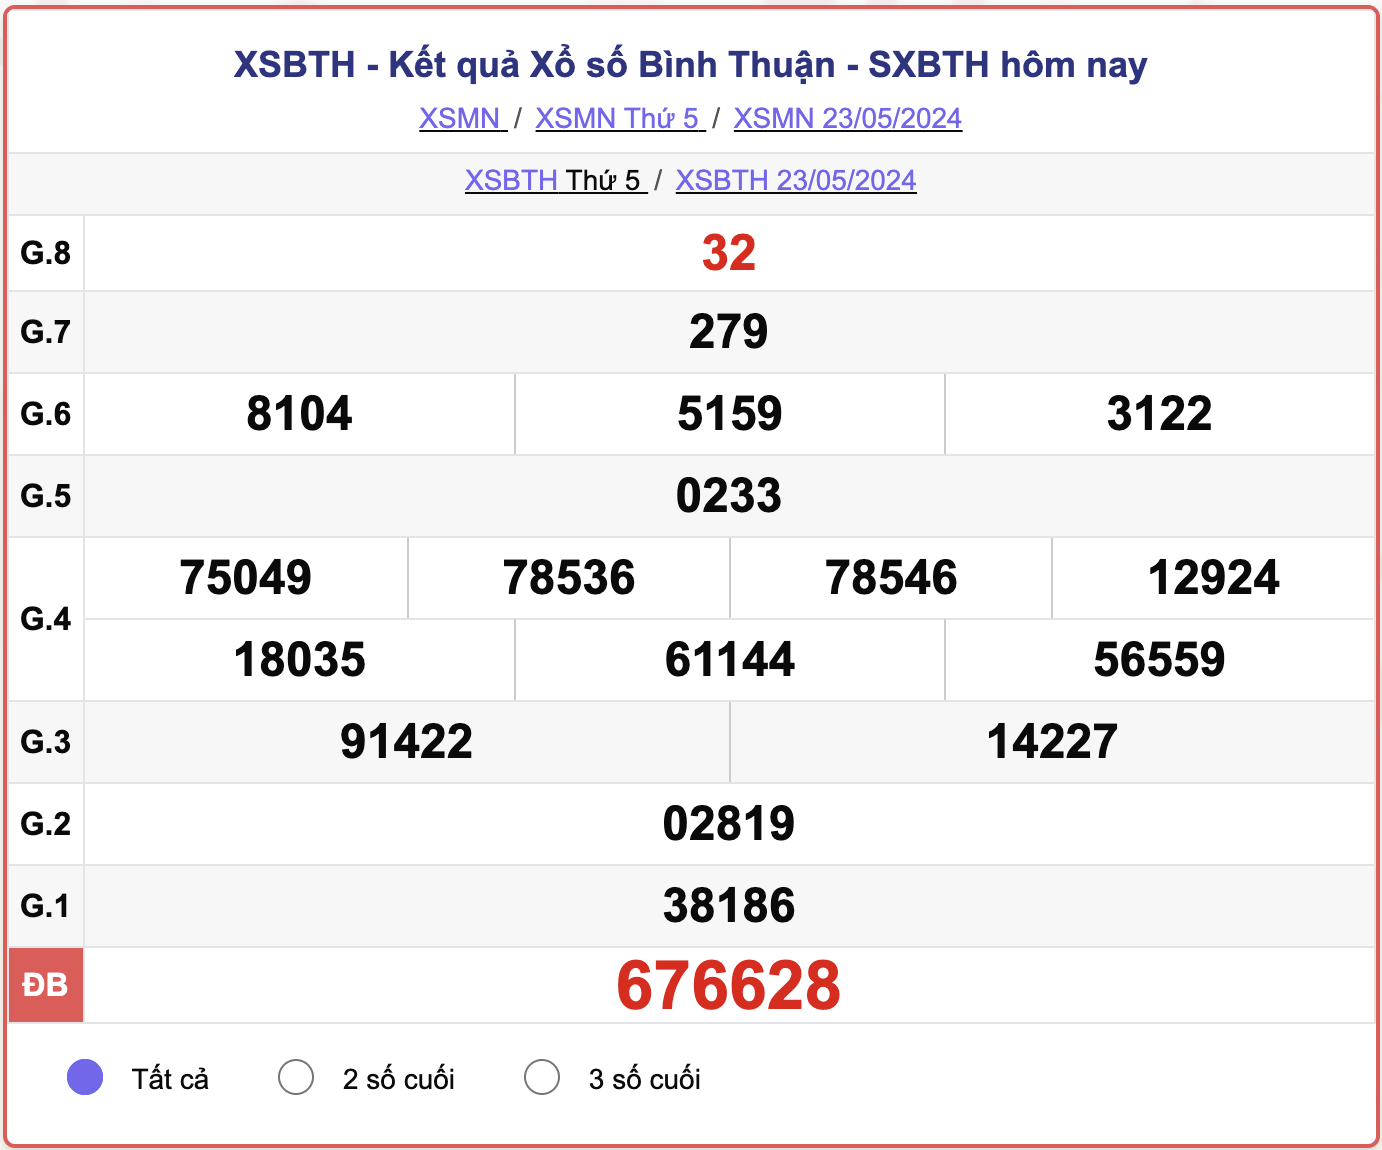 XSBTH 23/5, kết quả xổ số Bình Thuận ngày 23/5/2024.